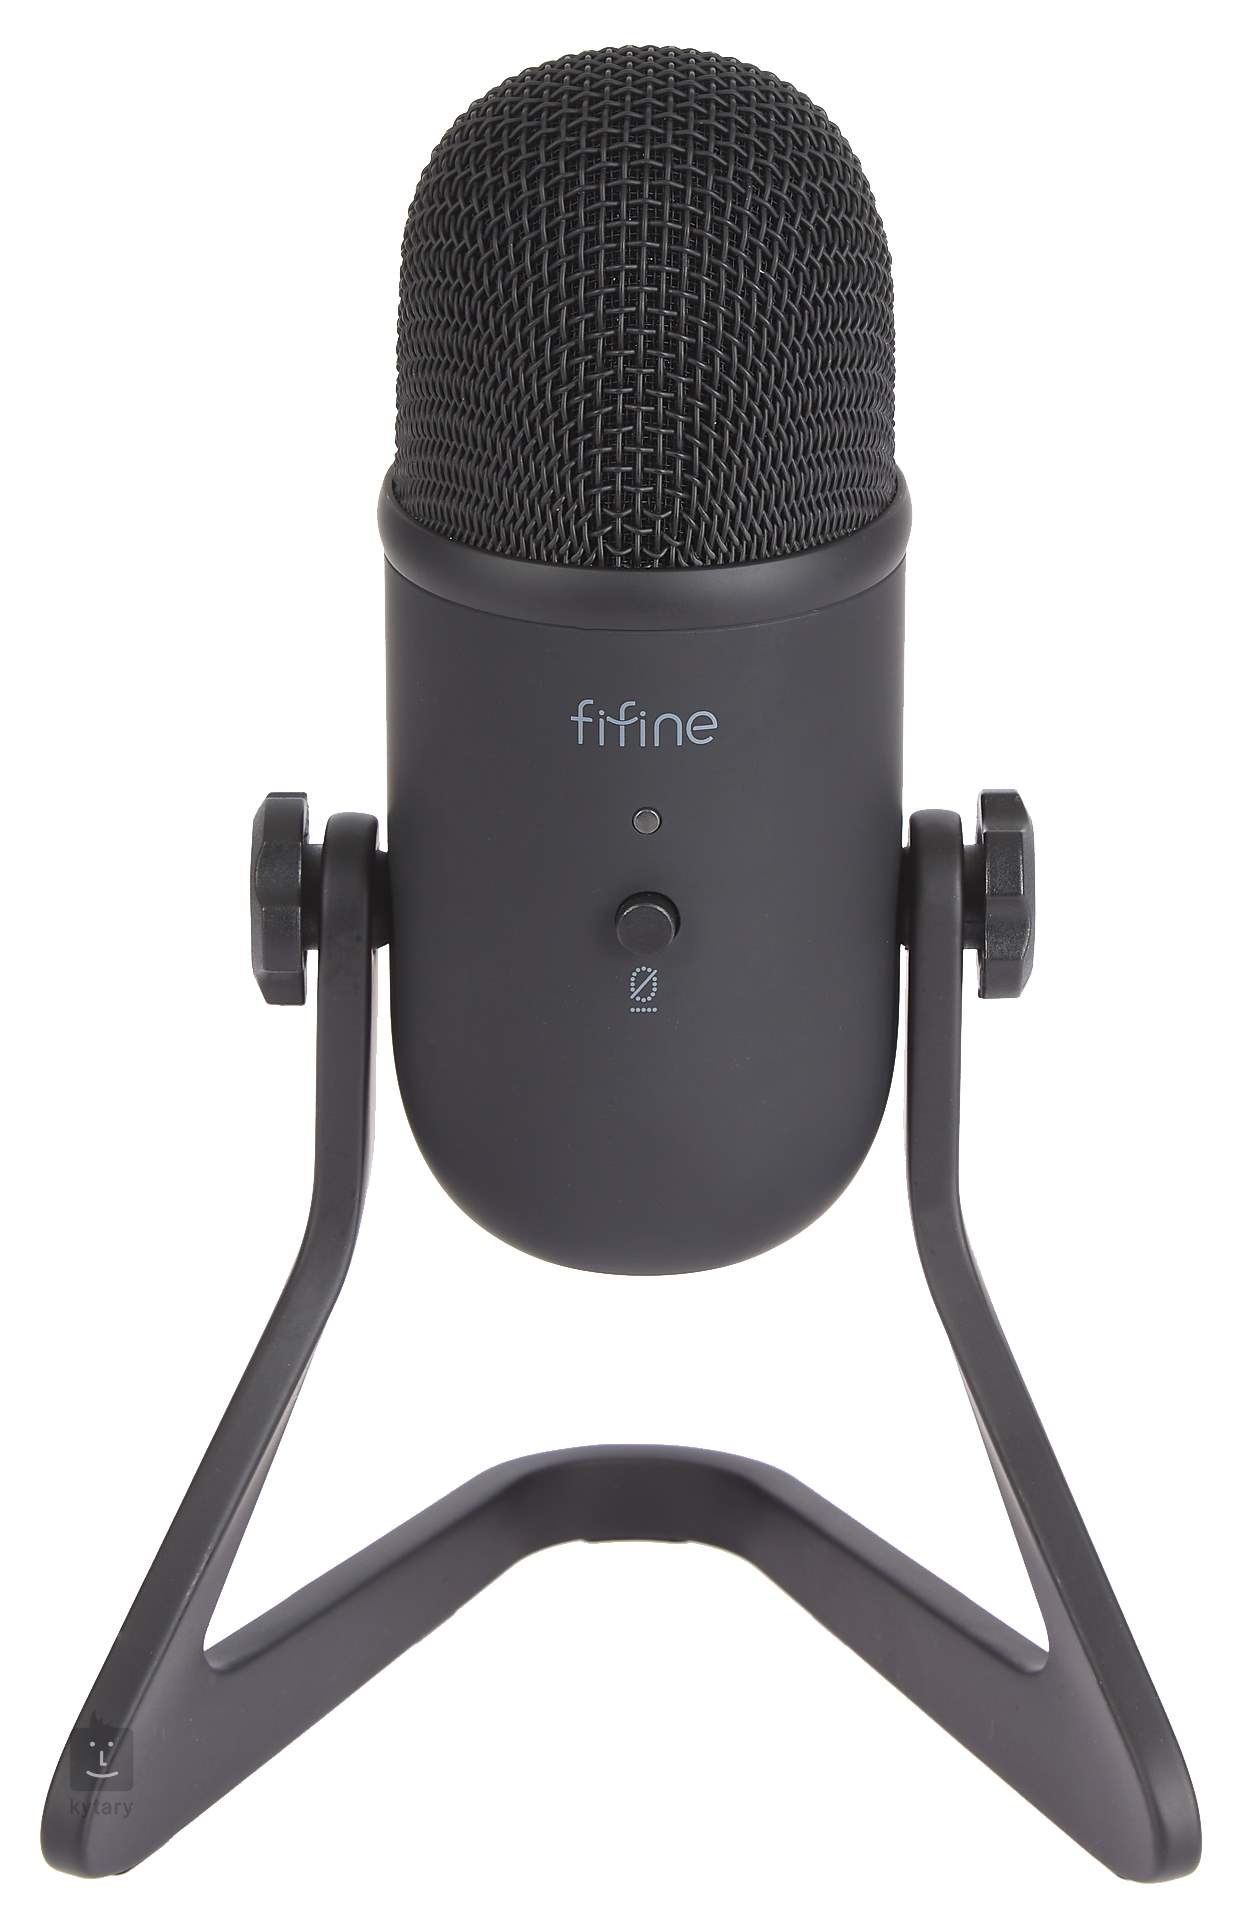 Micrófono para Podcast FIFINE K678 Cardiode USB Condensador